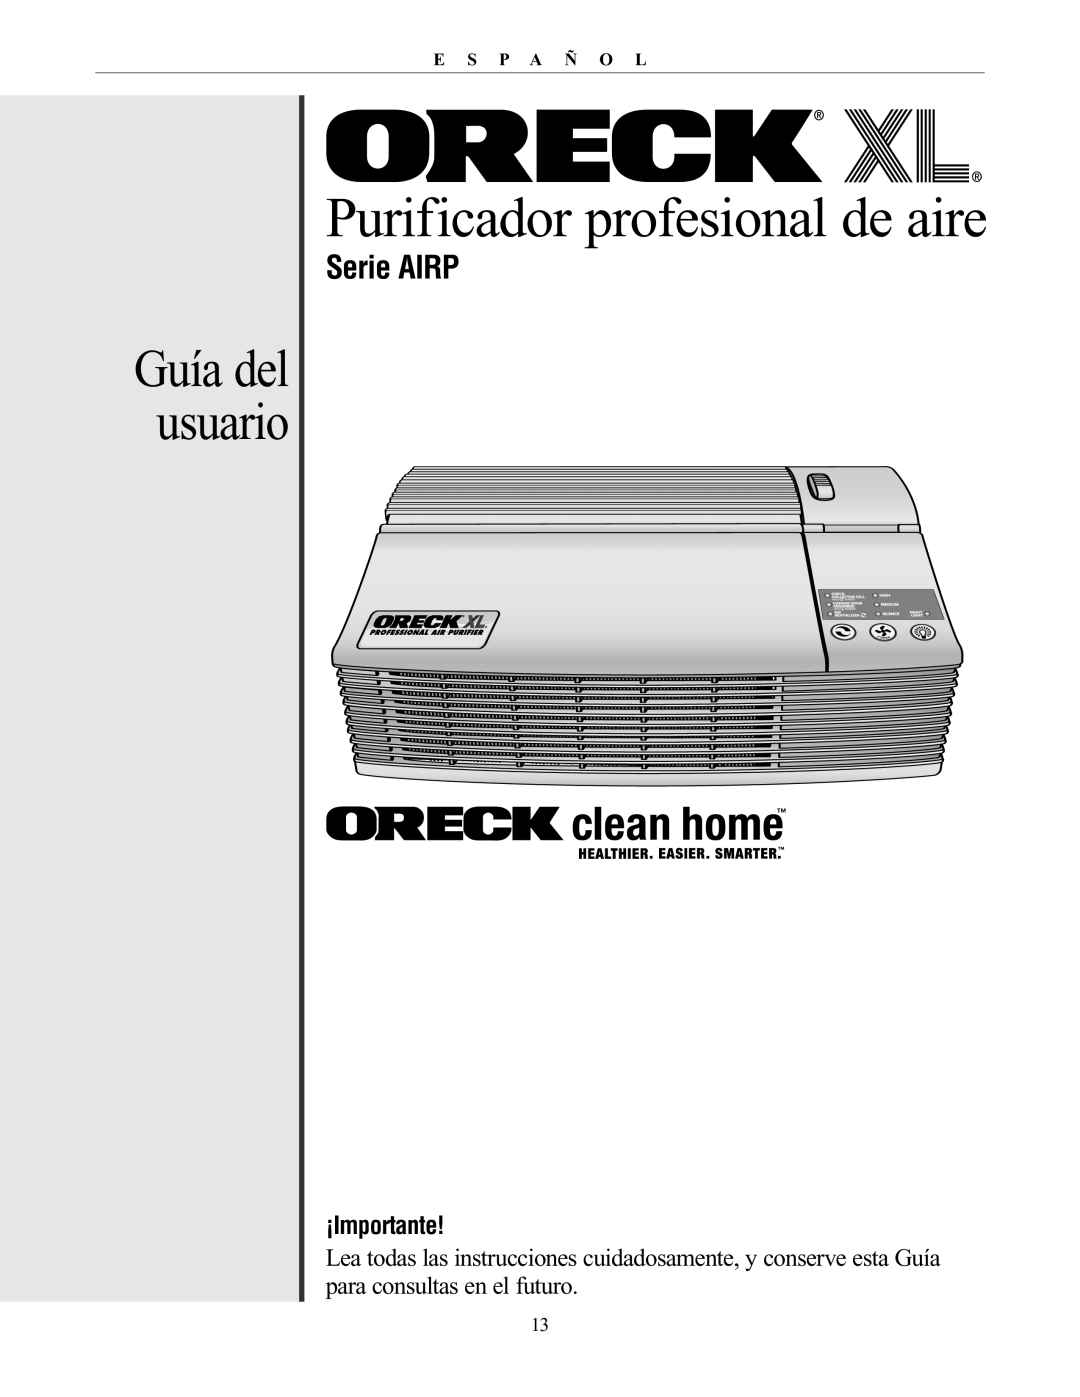 Oreck AIRP Series manual Guía del usuario, Serie AIRP, ¡Importante, Purificador profesional de aire 